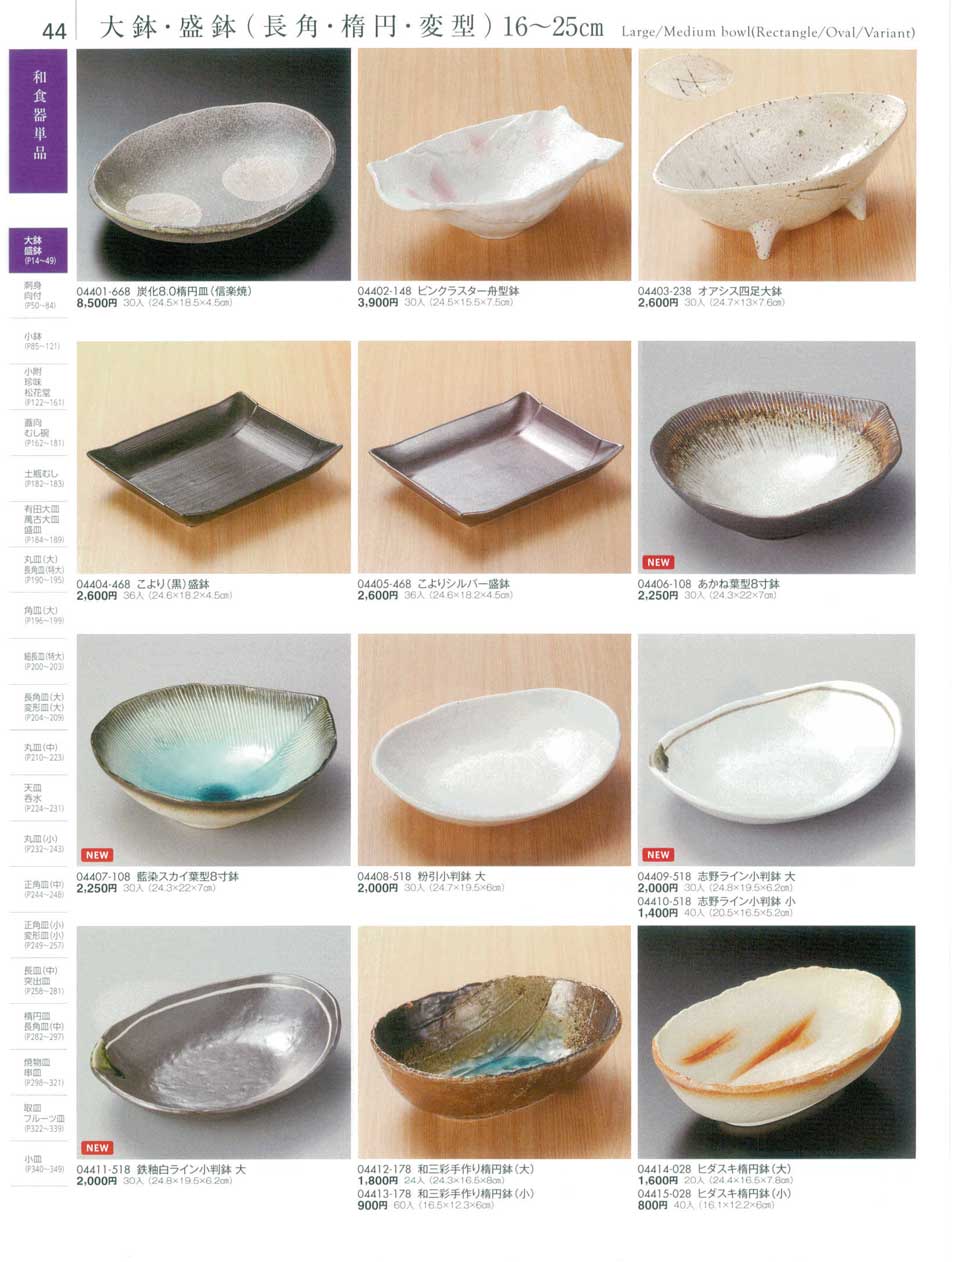 食器 大鉢・盛鉢（長角・楕円・変型）１６から２５ｃｍLarge/Medium bowl(Rectangle/Oval/Variant)  陶雅１８－44ページ